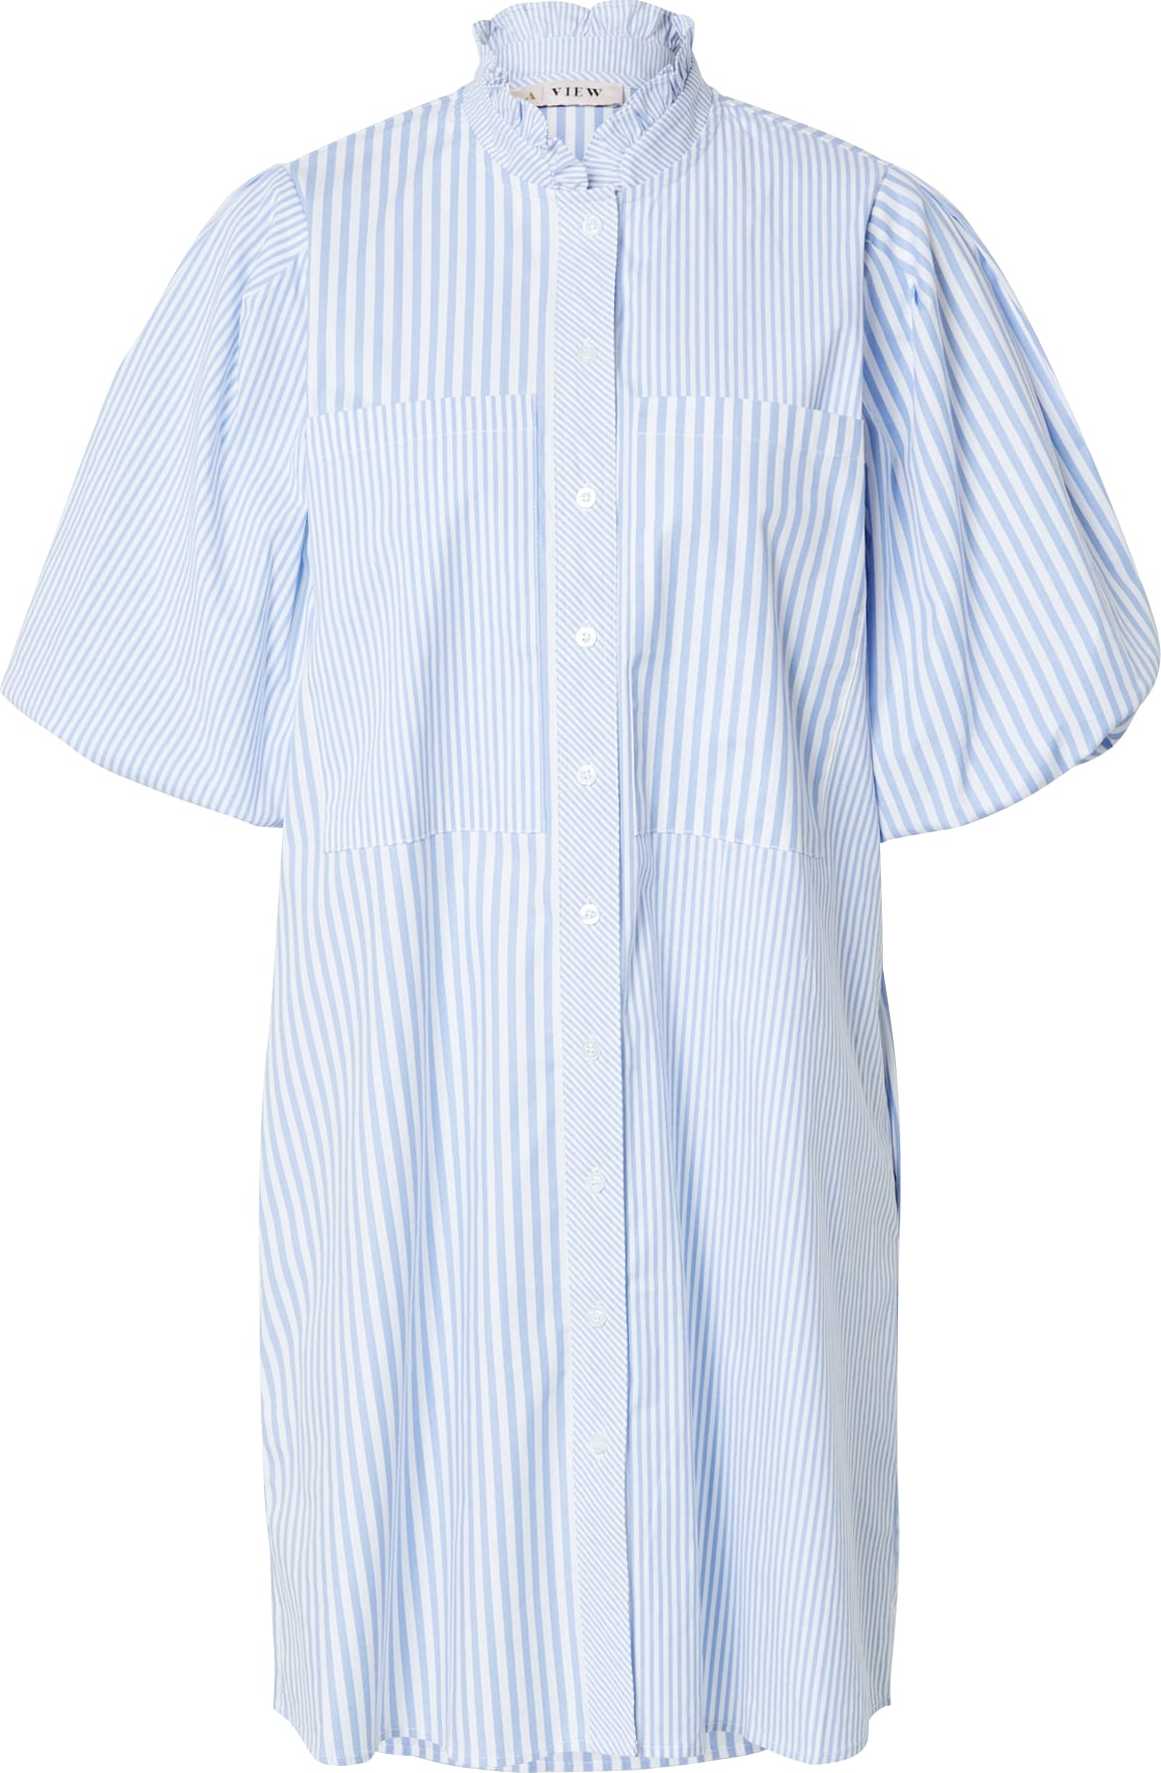 A-VIEW Košilové šaty 'Tiffany' světlemodrá / bílá